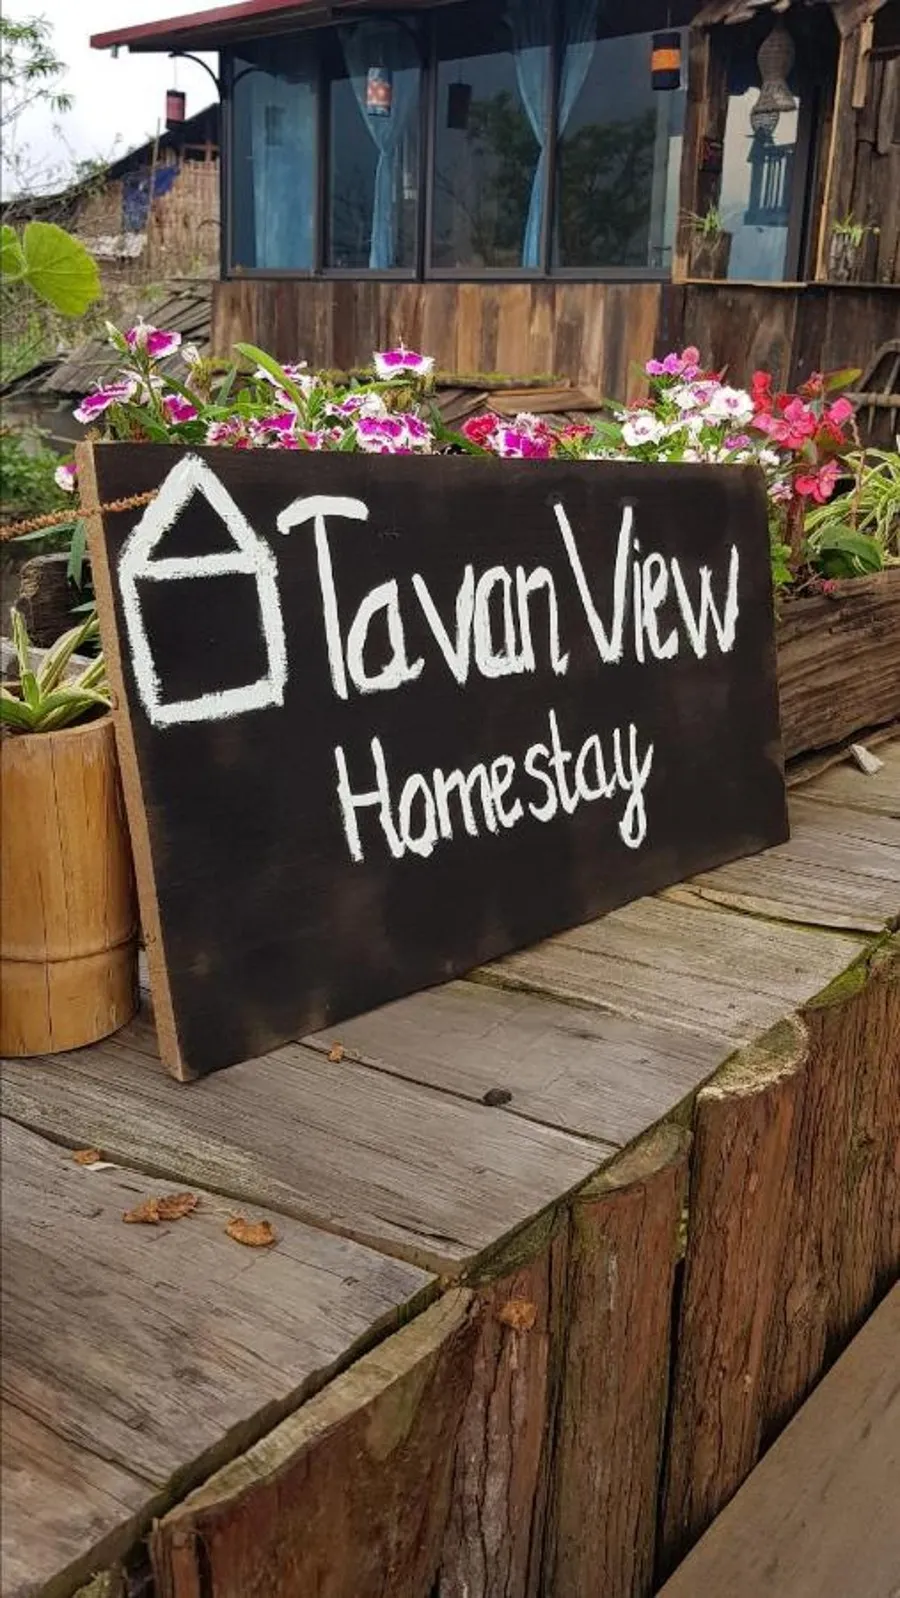 Tavan View Homestay, nơi tận hưởng cảnh sắc tuyệt vời của thiên nhiên Tây Bắc